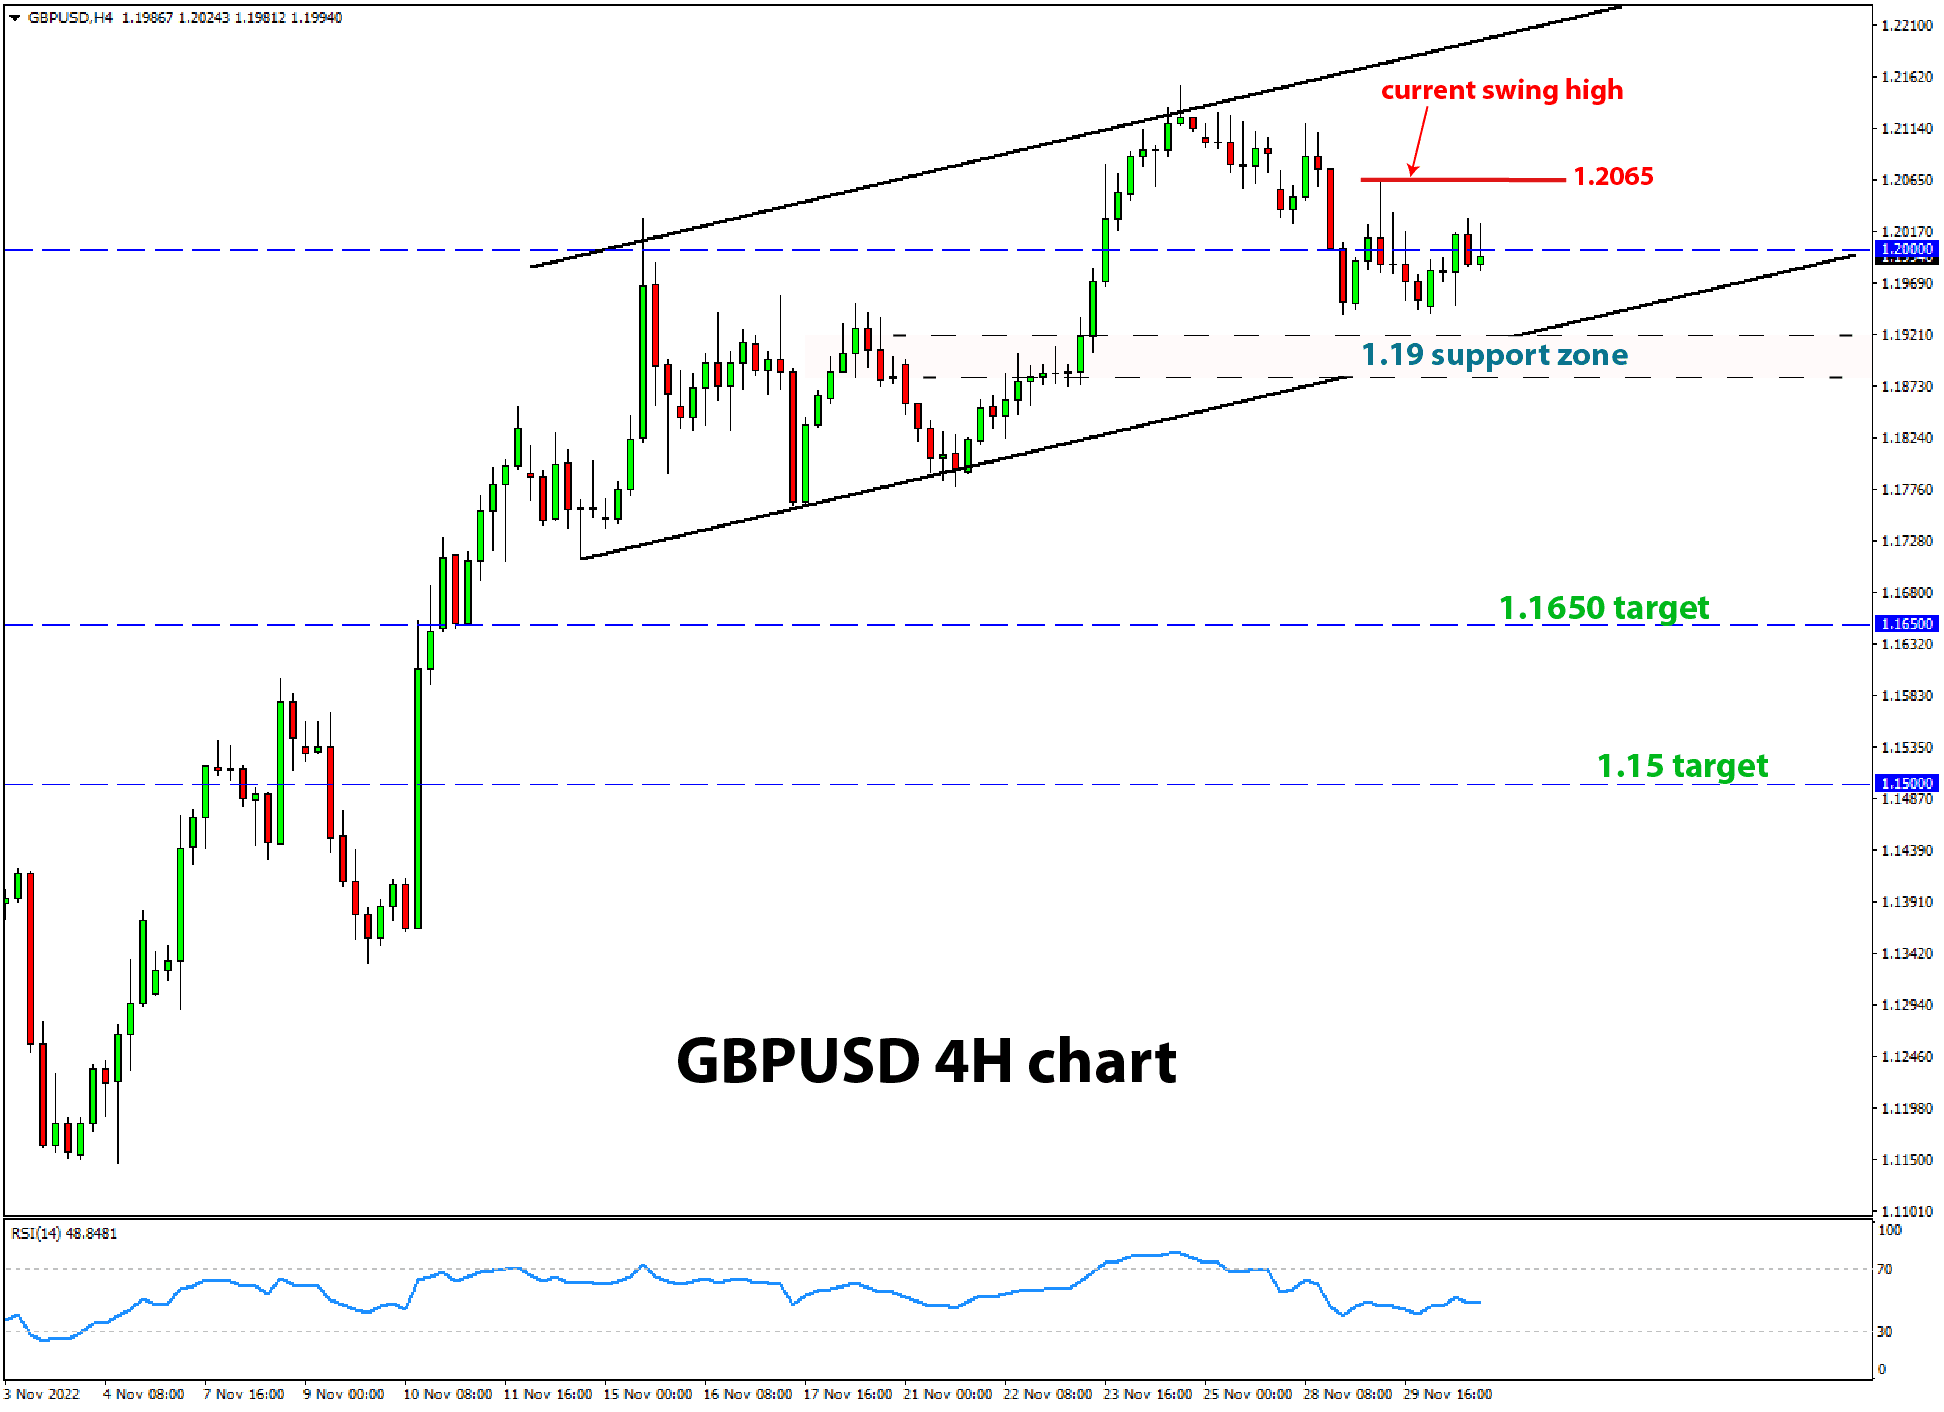 GBPUSD 4h chart trade signal